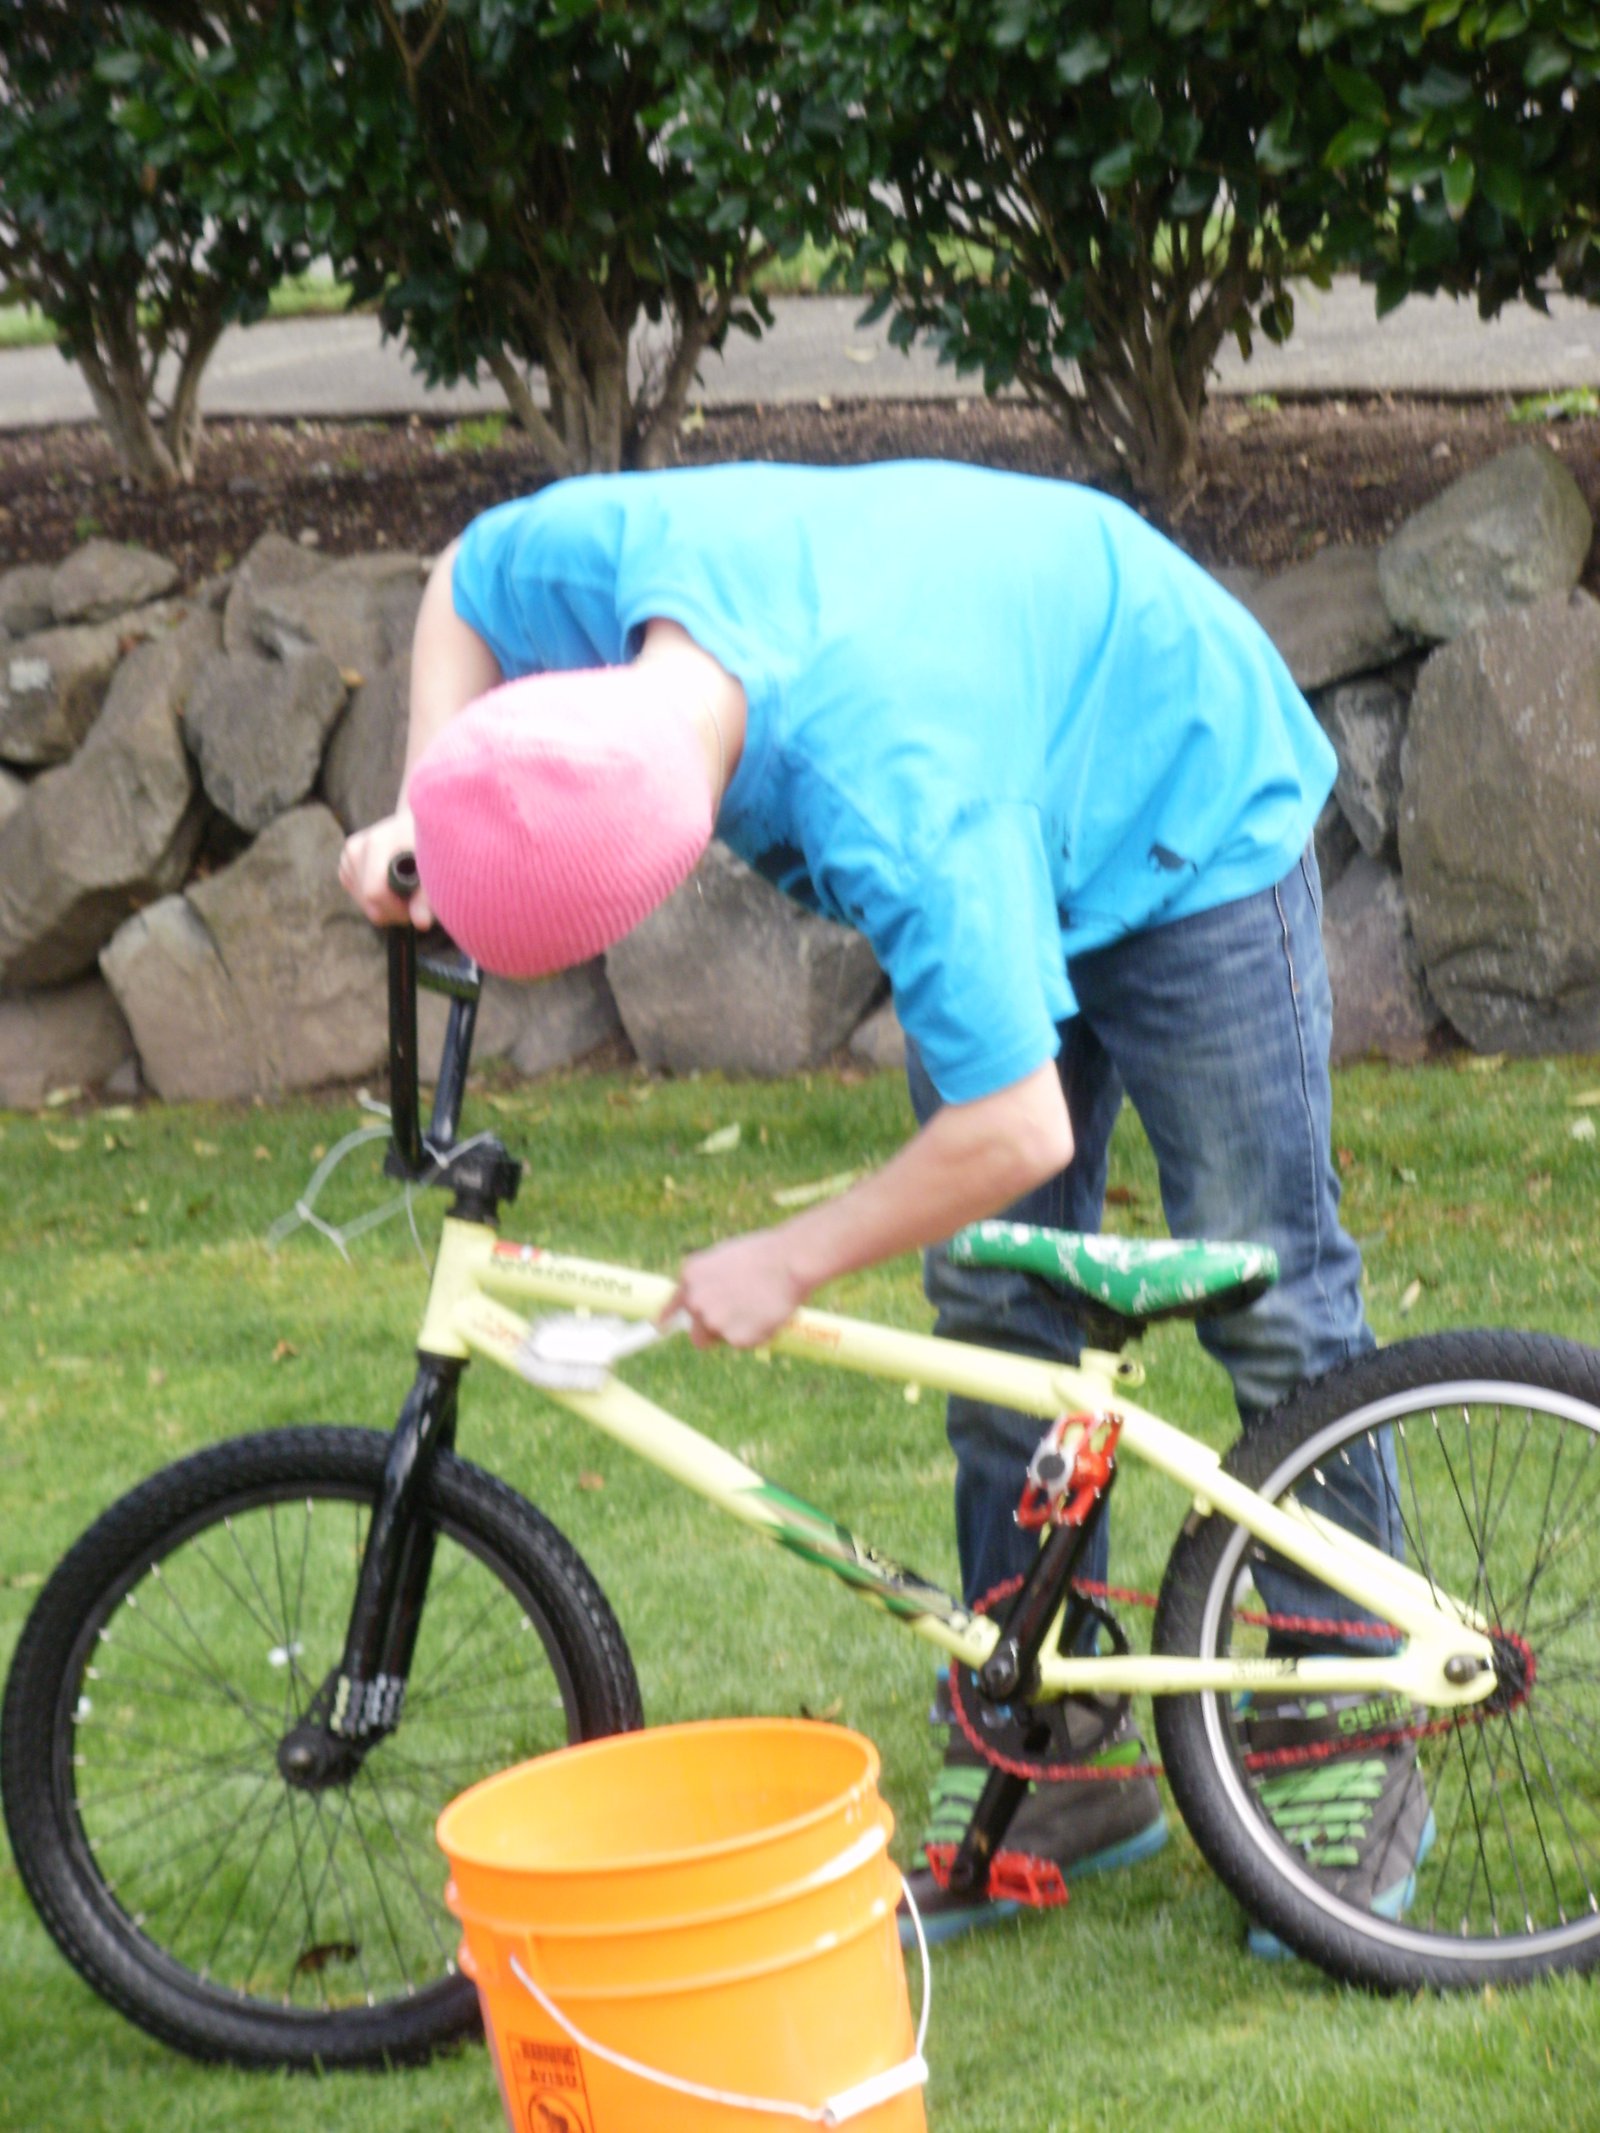 My kid washing his bike